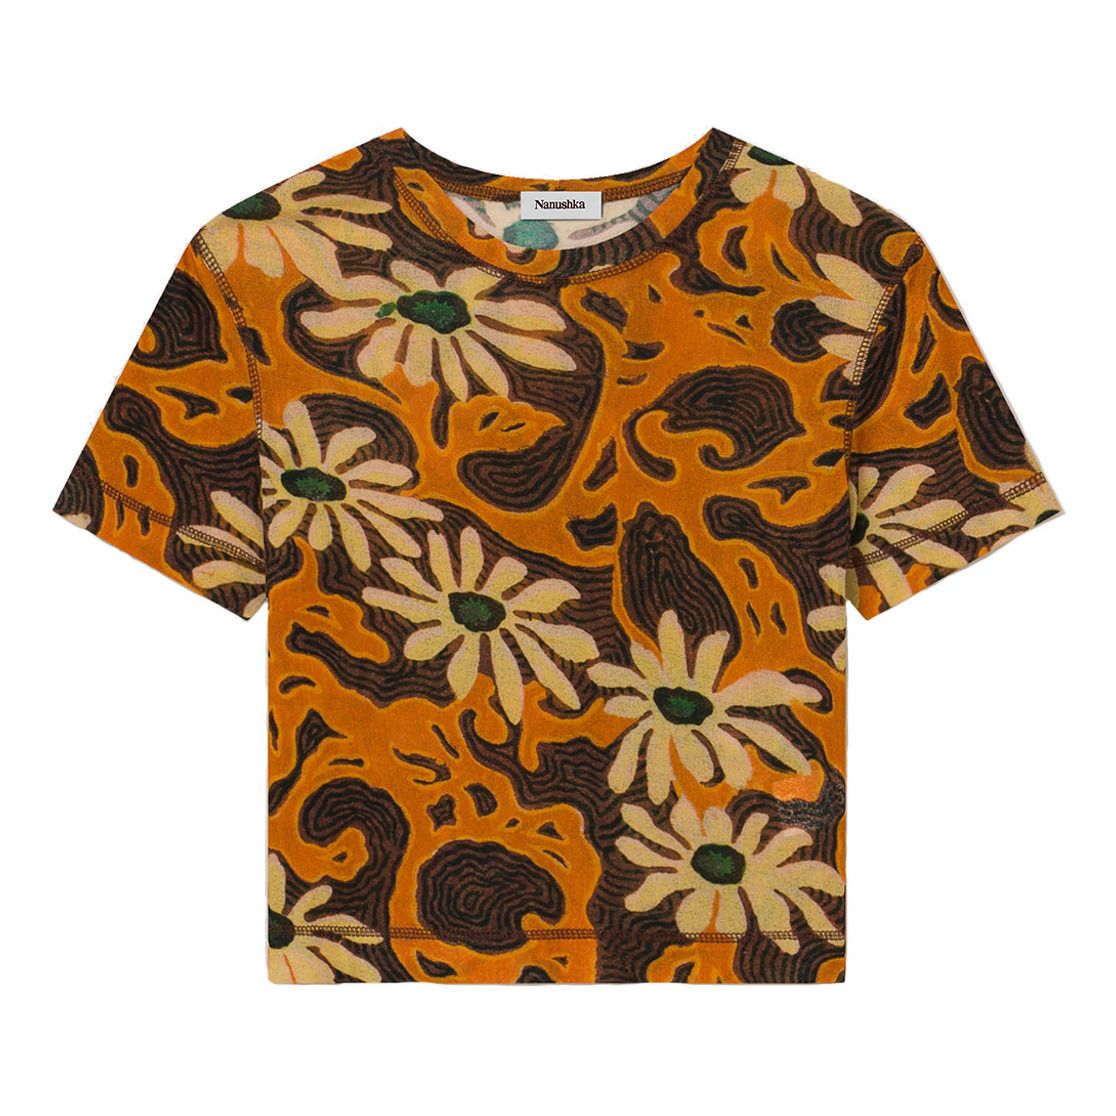 Nanushka - T-shirt Nilo Mesh Recyclé - Femme - Orange